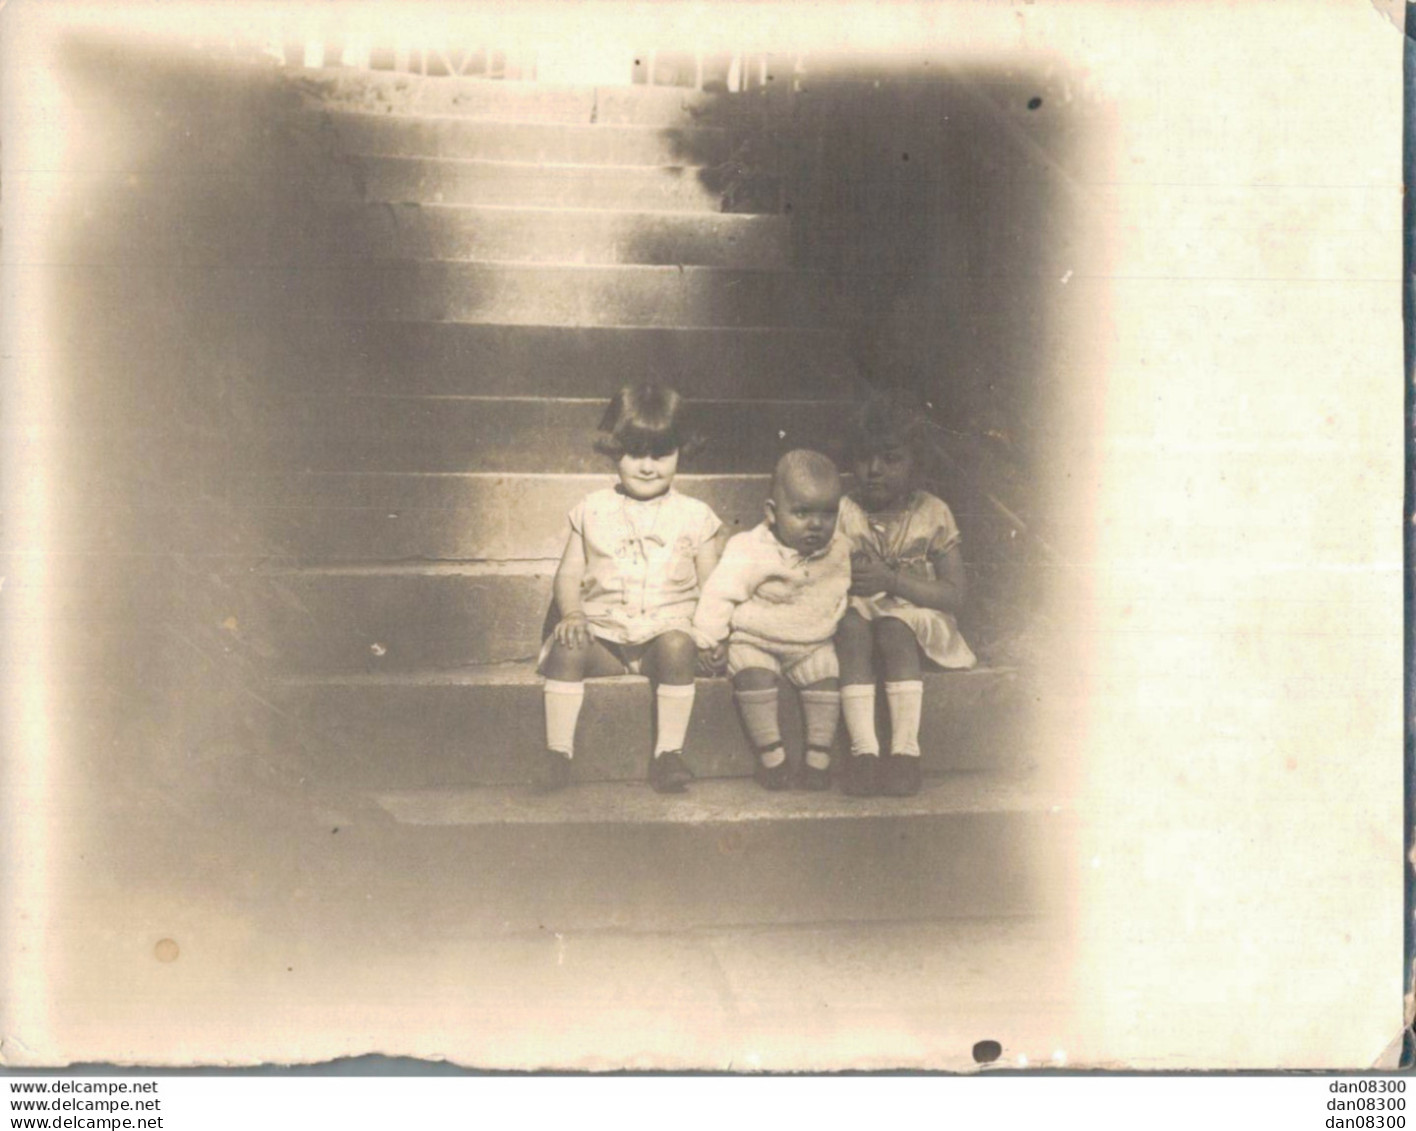 PHOTO DE 12 X 9 CMS TROIS ENFANTS ASSIS SUR LES ESCALIERS SOUVENIR DE MME GERMAINE BONNEROT EN 1929 - Anonymous Persons